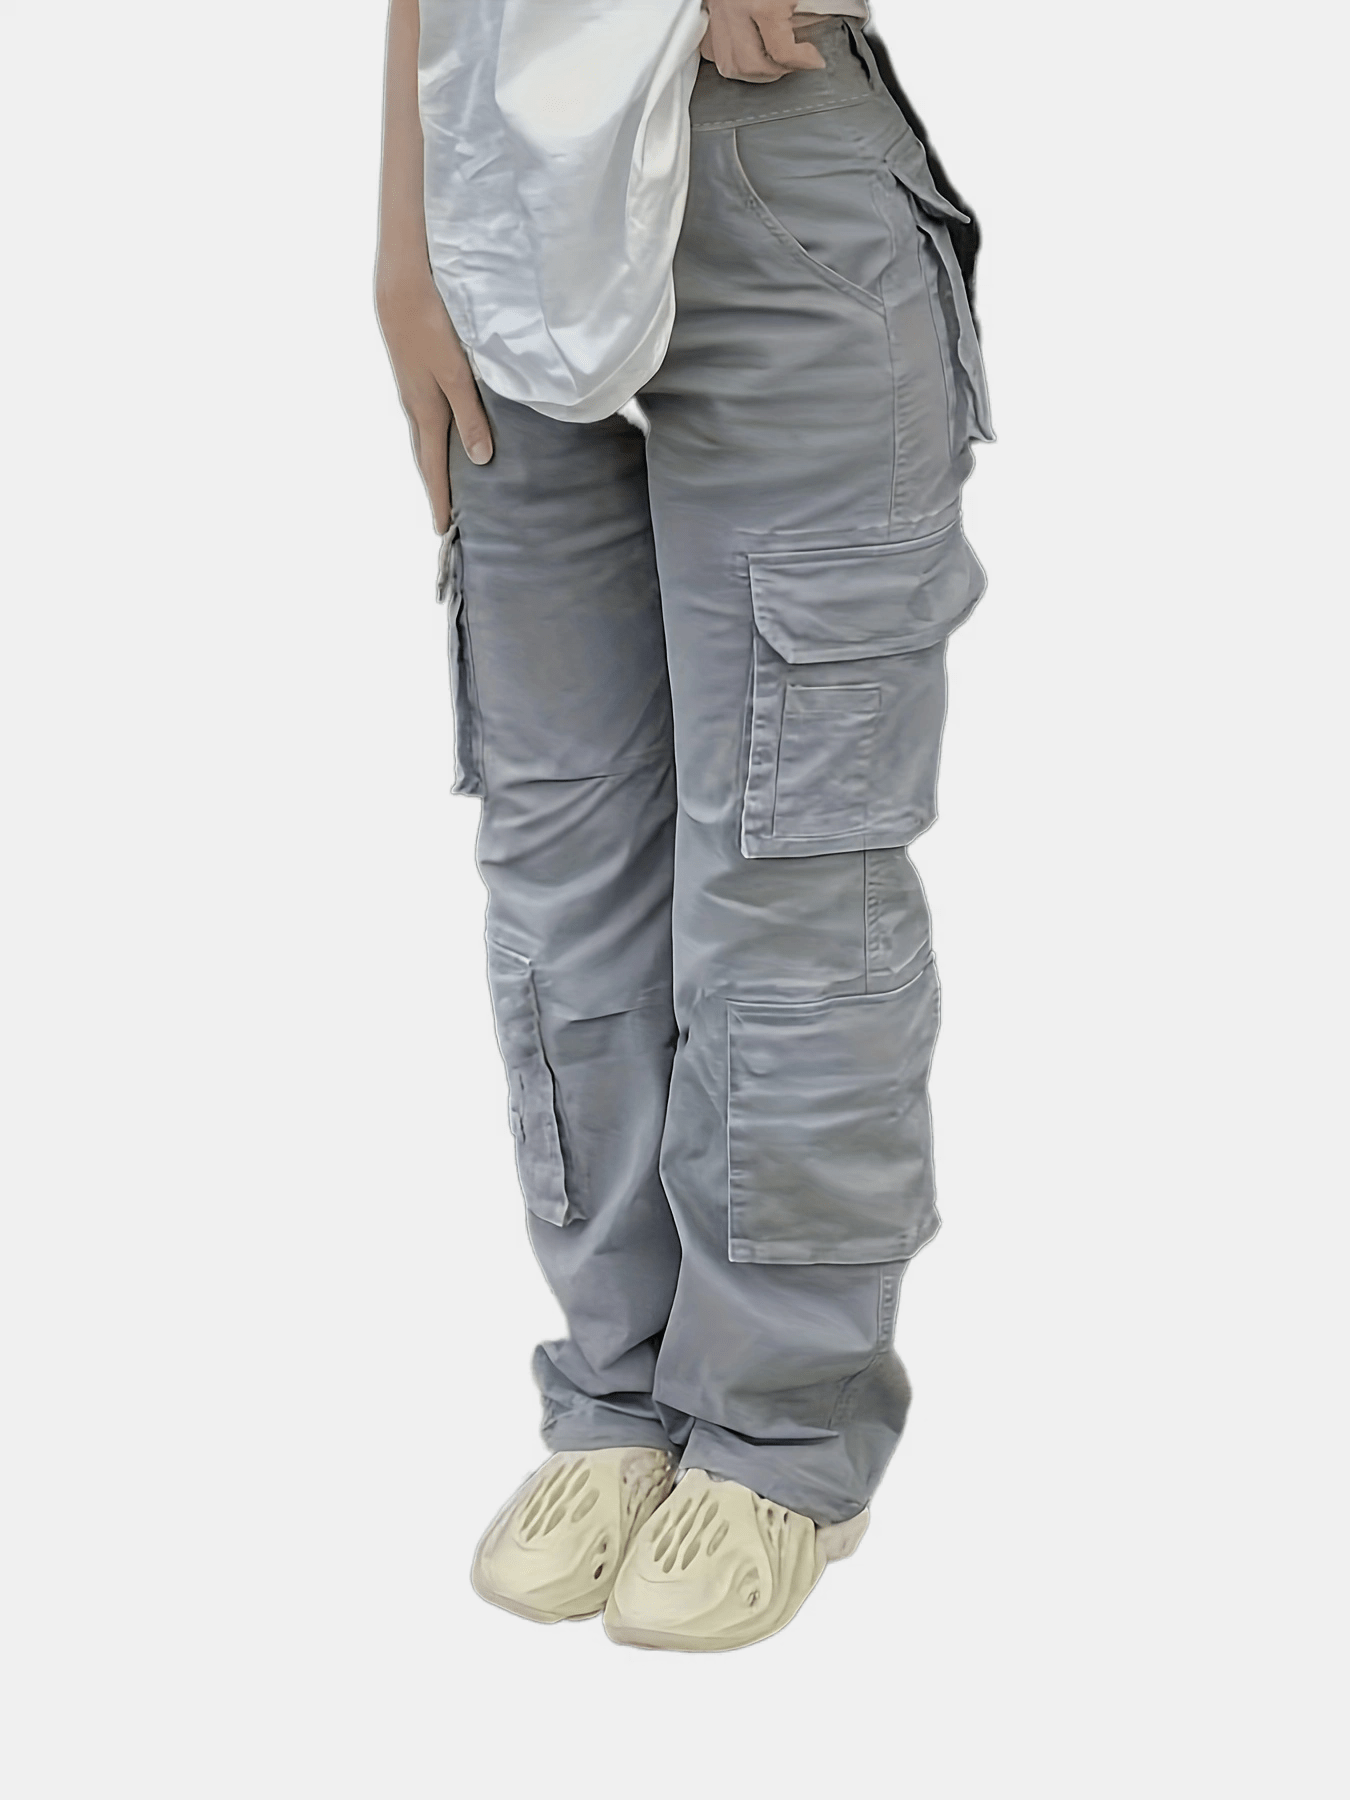 Pantalones Cargo para hombre, pantalón holgado informal, Color sólido,  negro, bolsillo, cintura elástica, largo hasta el